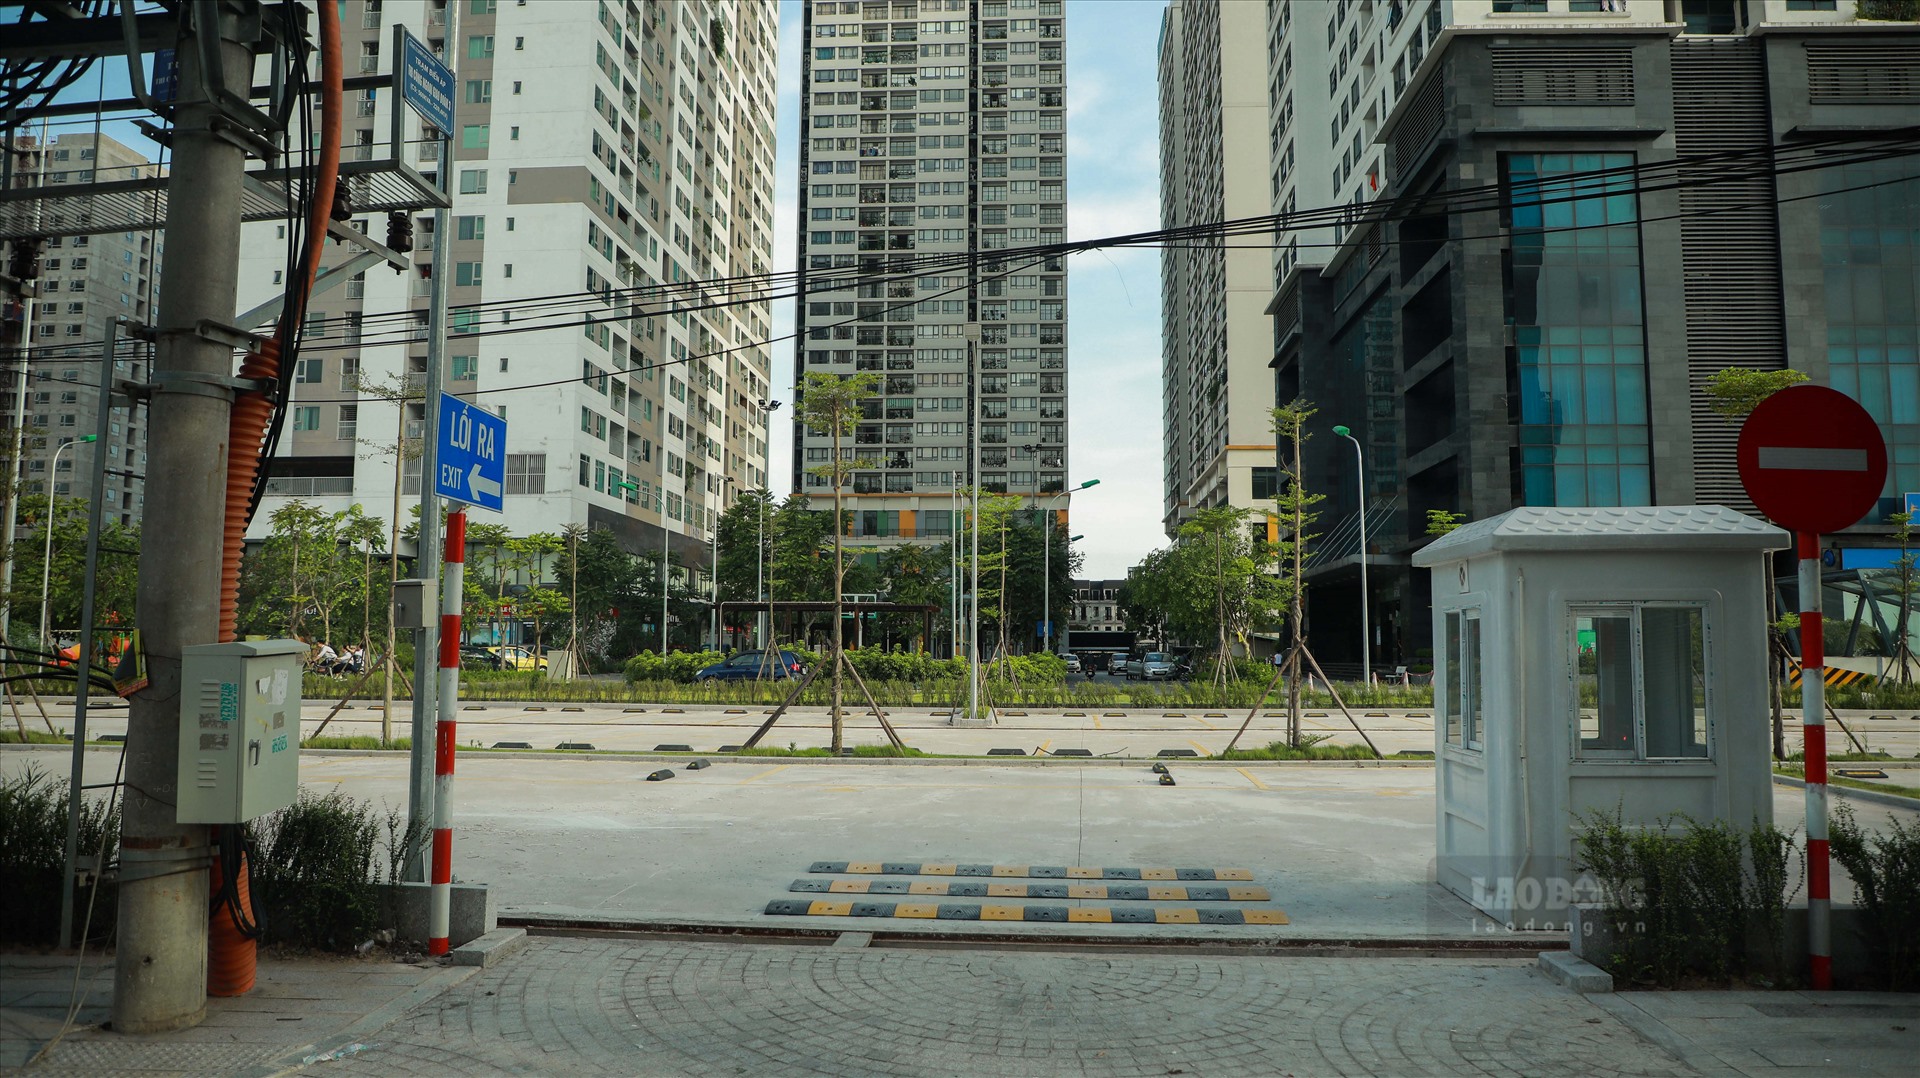 Trao đổi với phóng viên Báo Lao Động, đại diện Tổng Công ty Xây Dựng Hà Nội - chủ đầu tư KĐT Ngoại giao đoàn khẳng định đã xây hai bãi đỗ xe. Tuy nhiên người này cho biết chưa đưa bãi xe vào hoạt động do thủ tục.